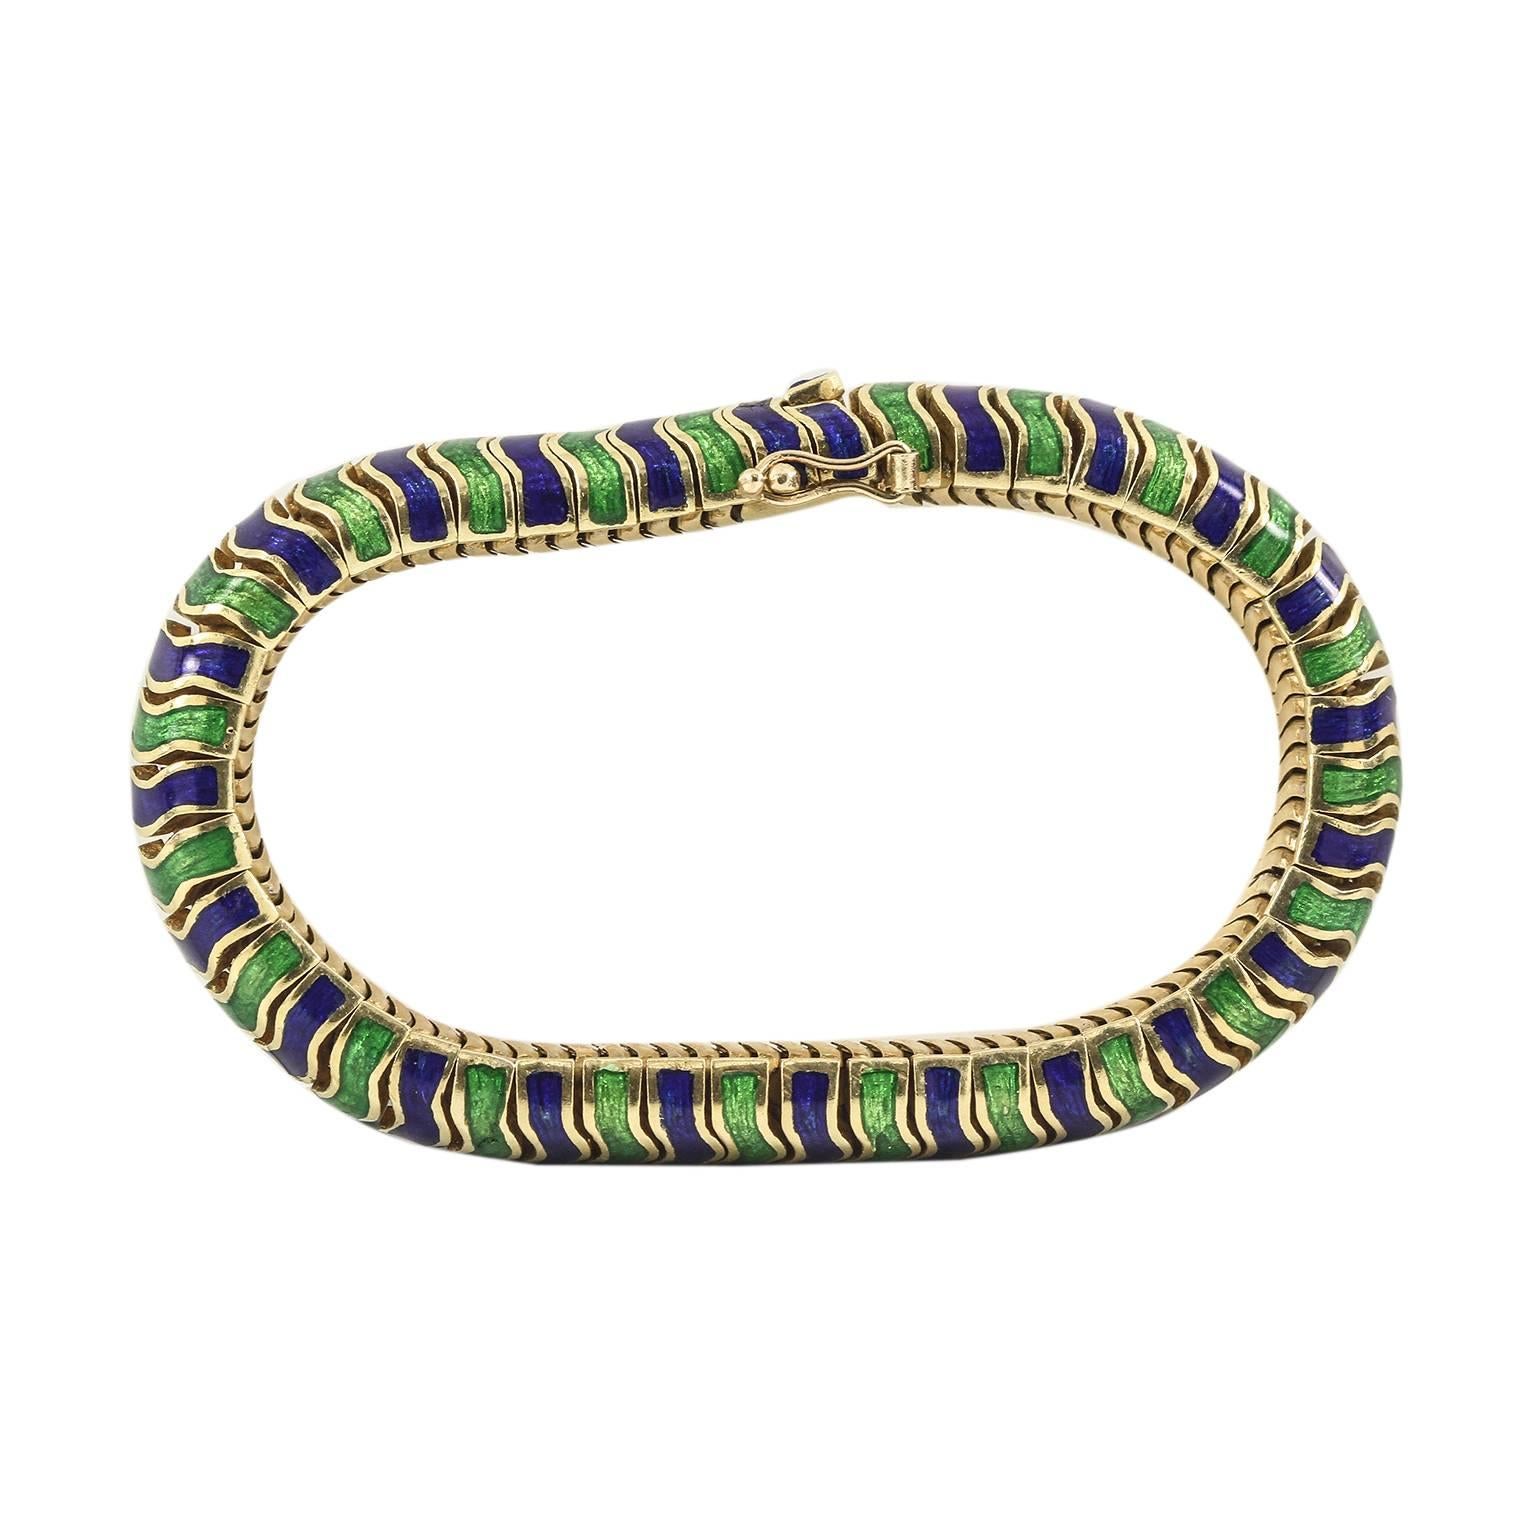 Tiffany & CO. Caterpillar Bracelet in Blue and Green Enamel
6.5 inch
